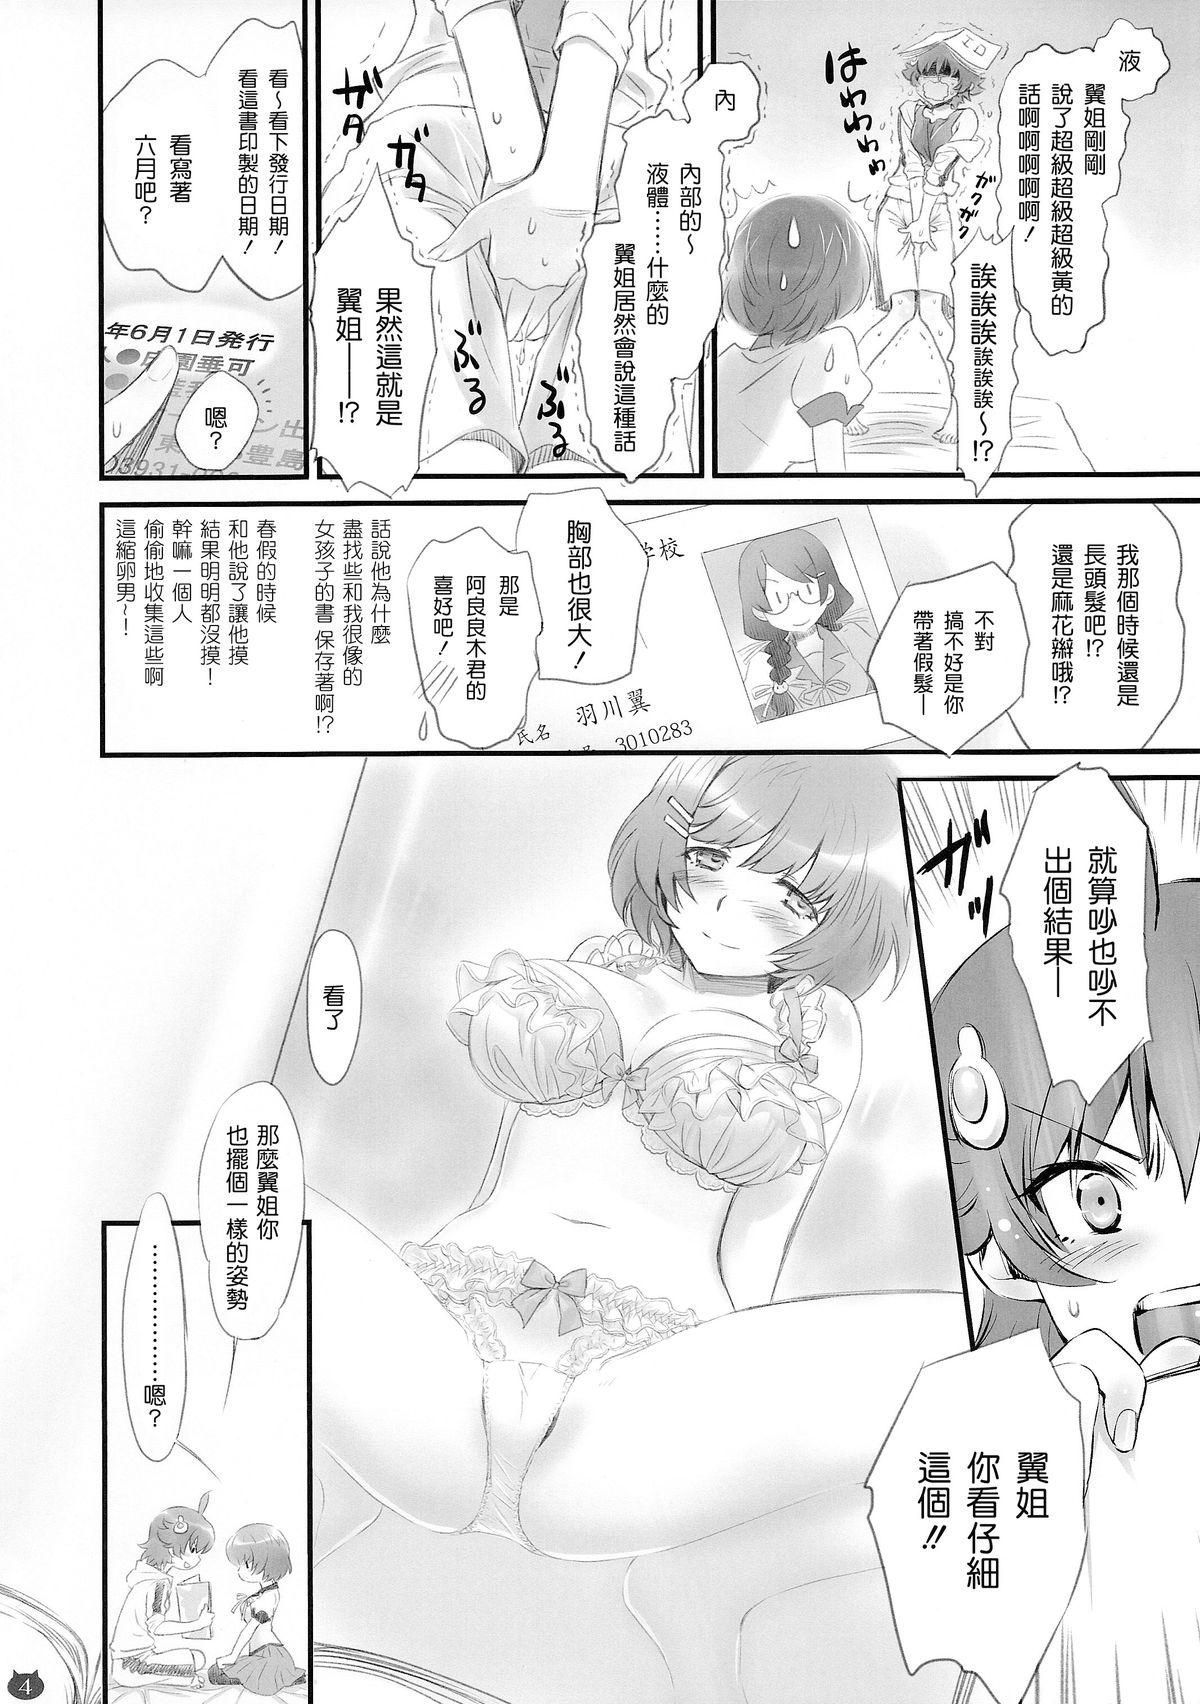 Sofa Tsubasa Neko - Bakemonogatari Internal - Page 4